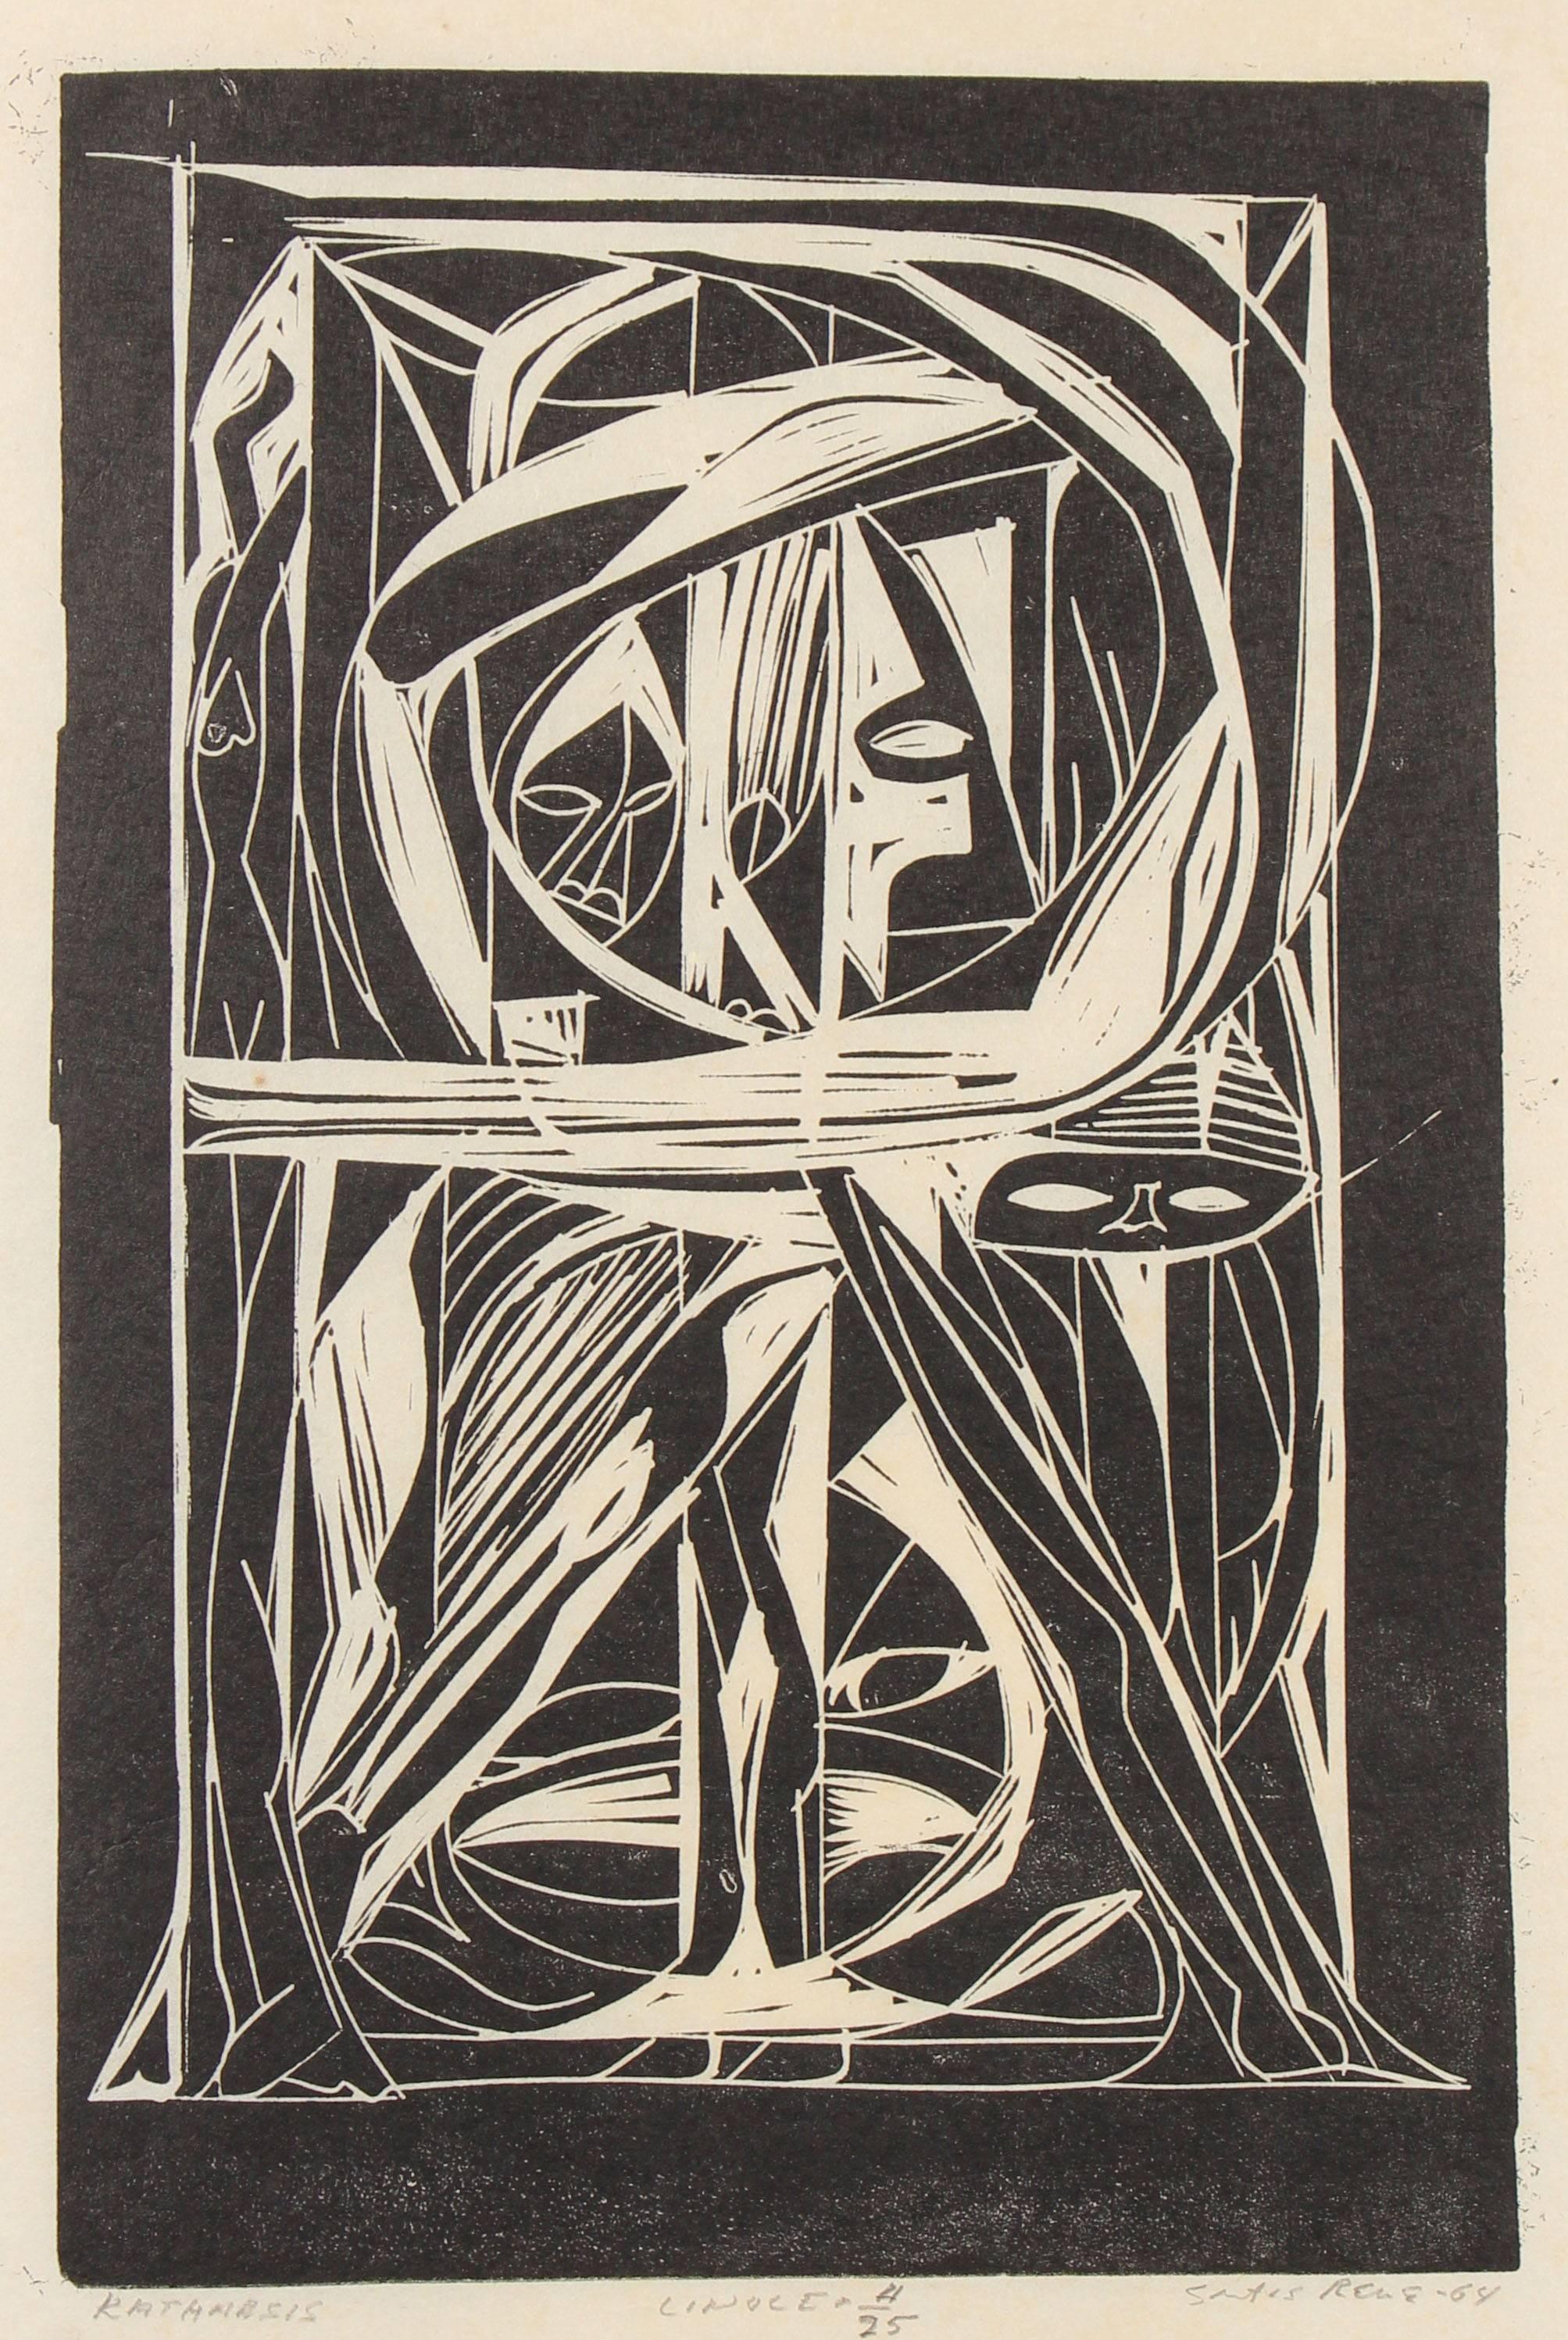 Santos Rene Irizarry Abstract Print - "Katharsis" Modernist Abstract Linocut, Circa 1960